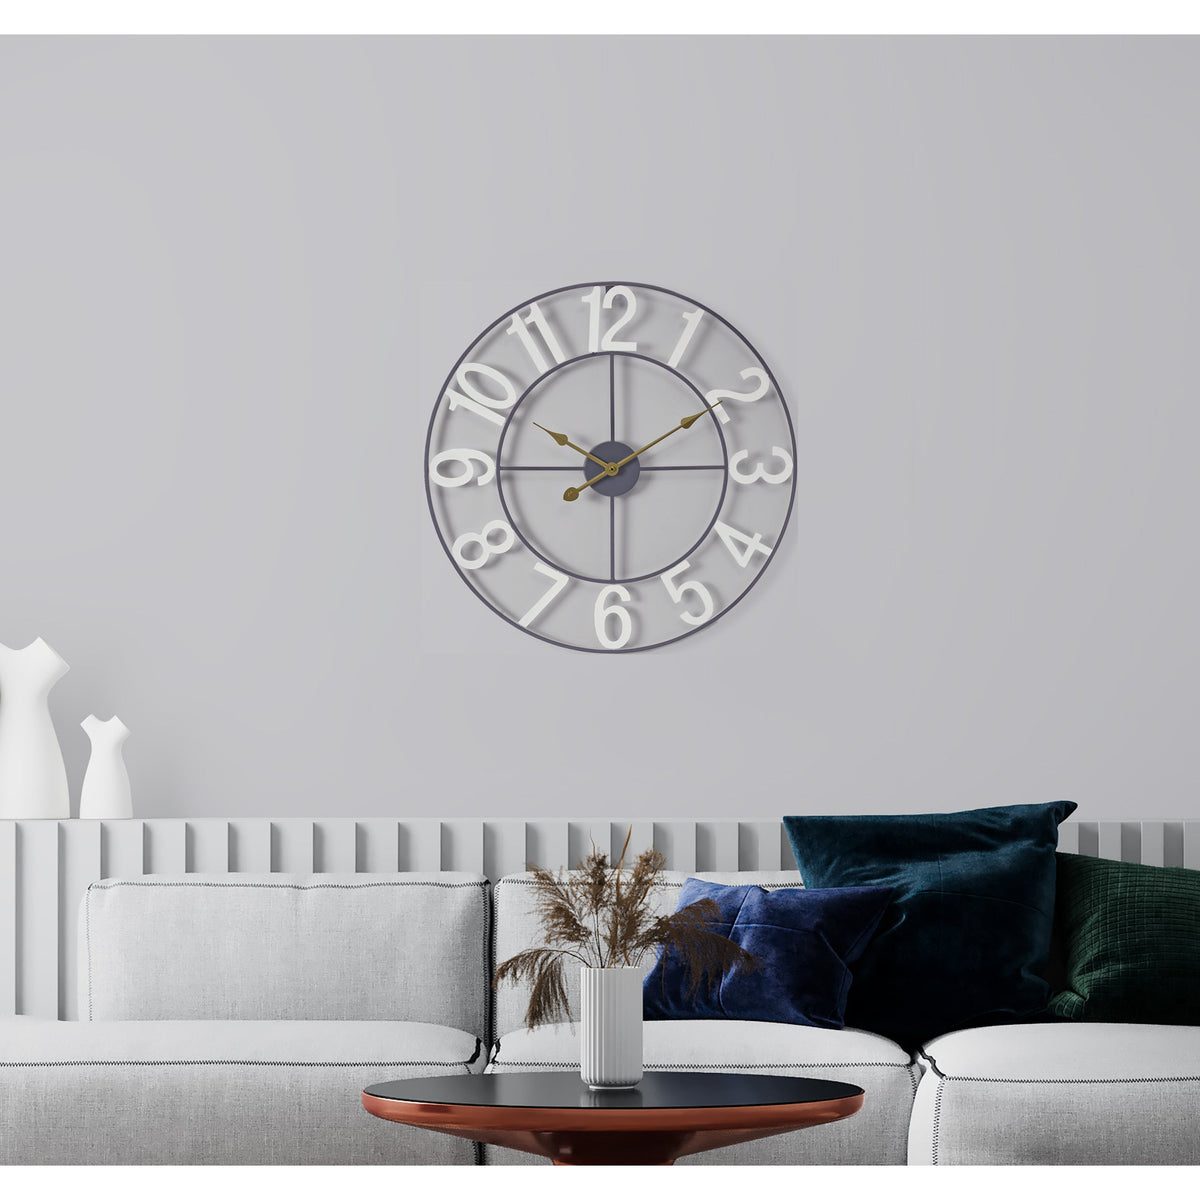 Stylish Modern wall clock